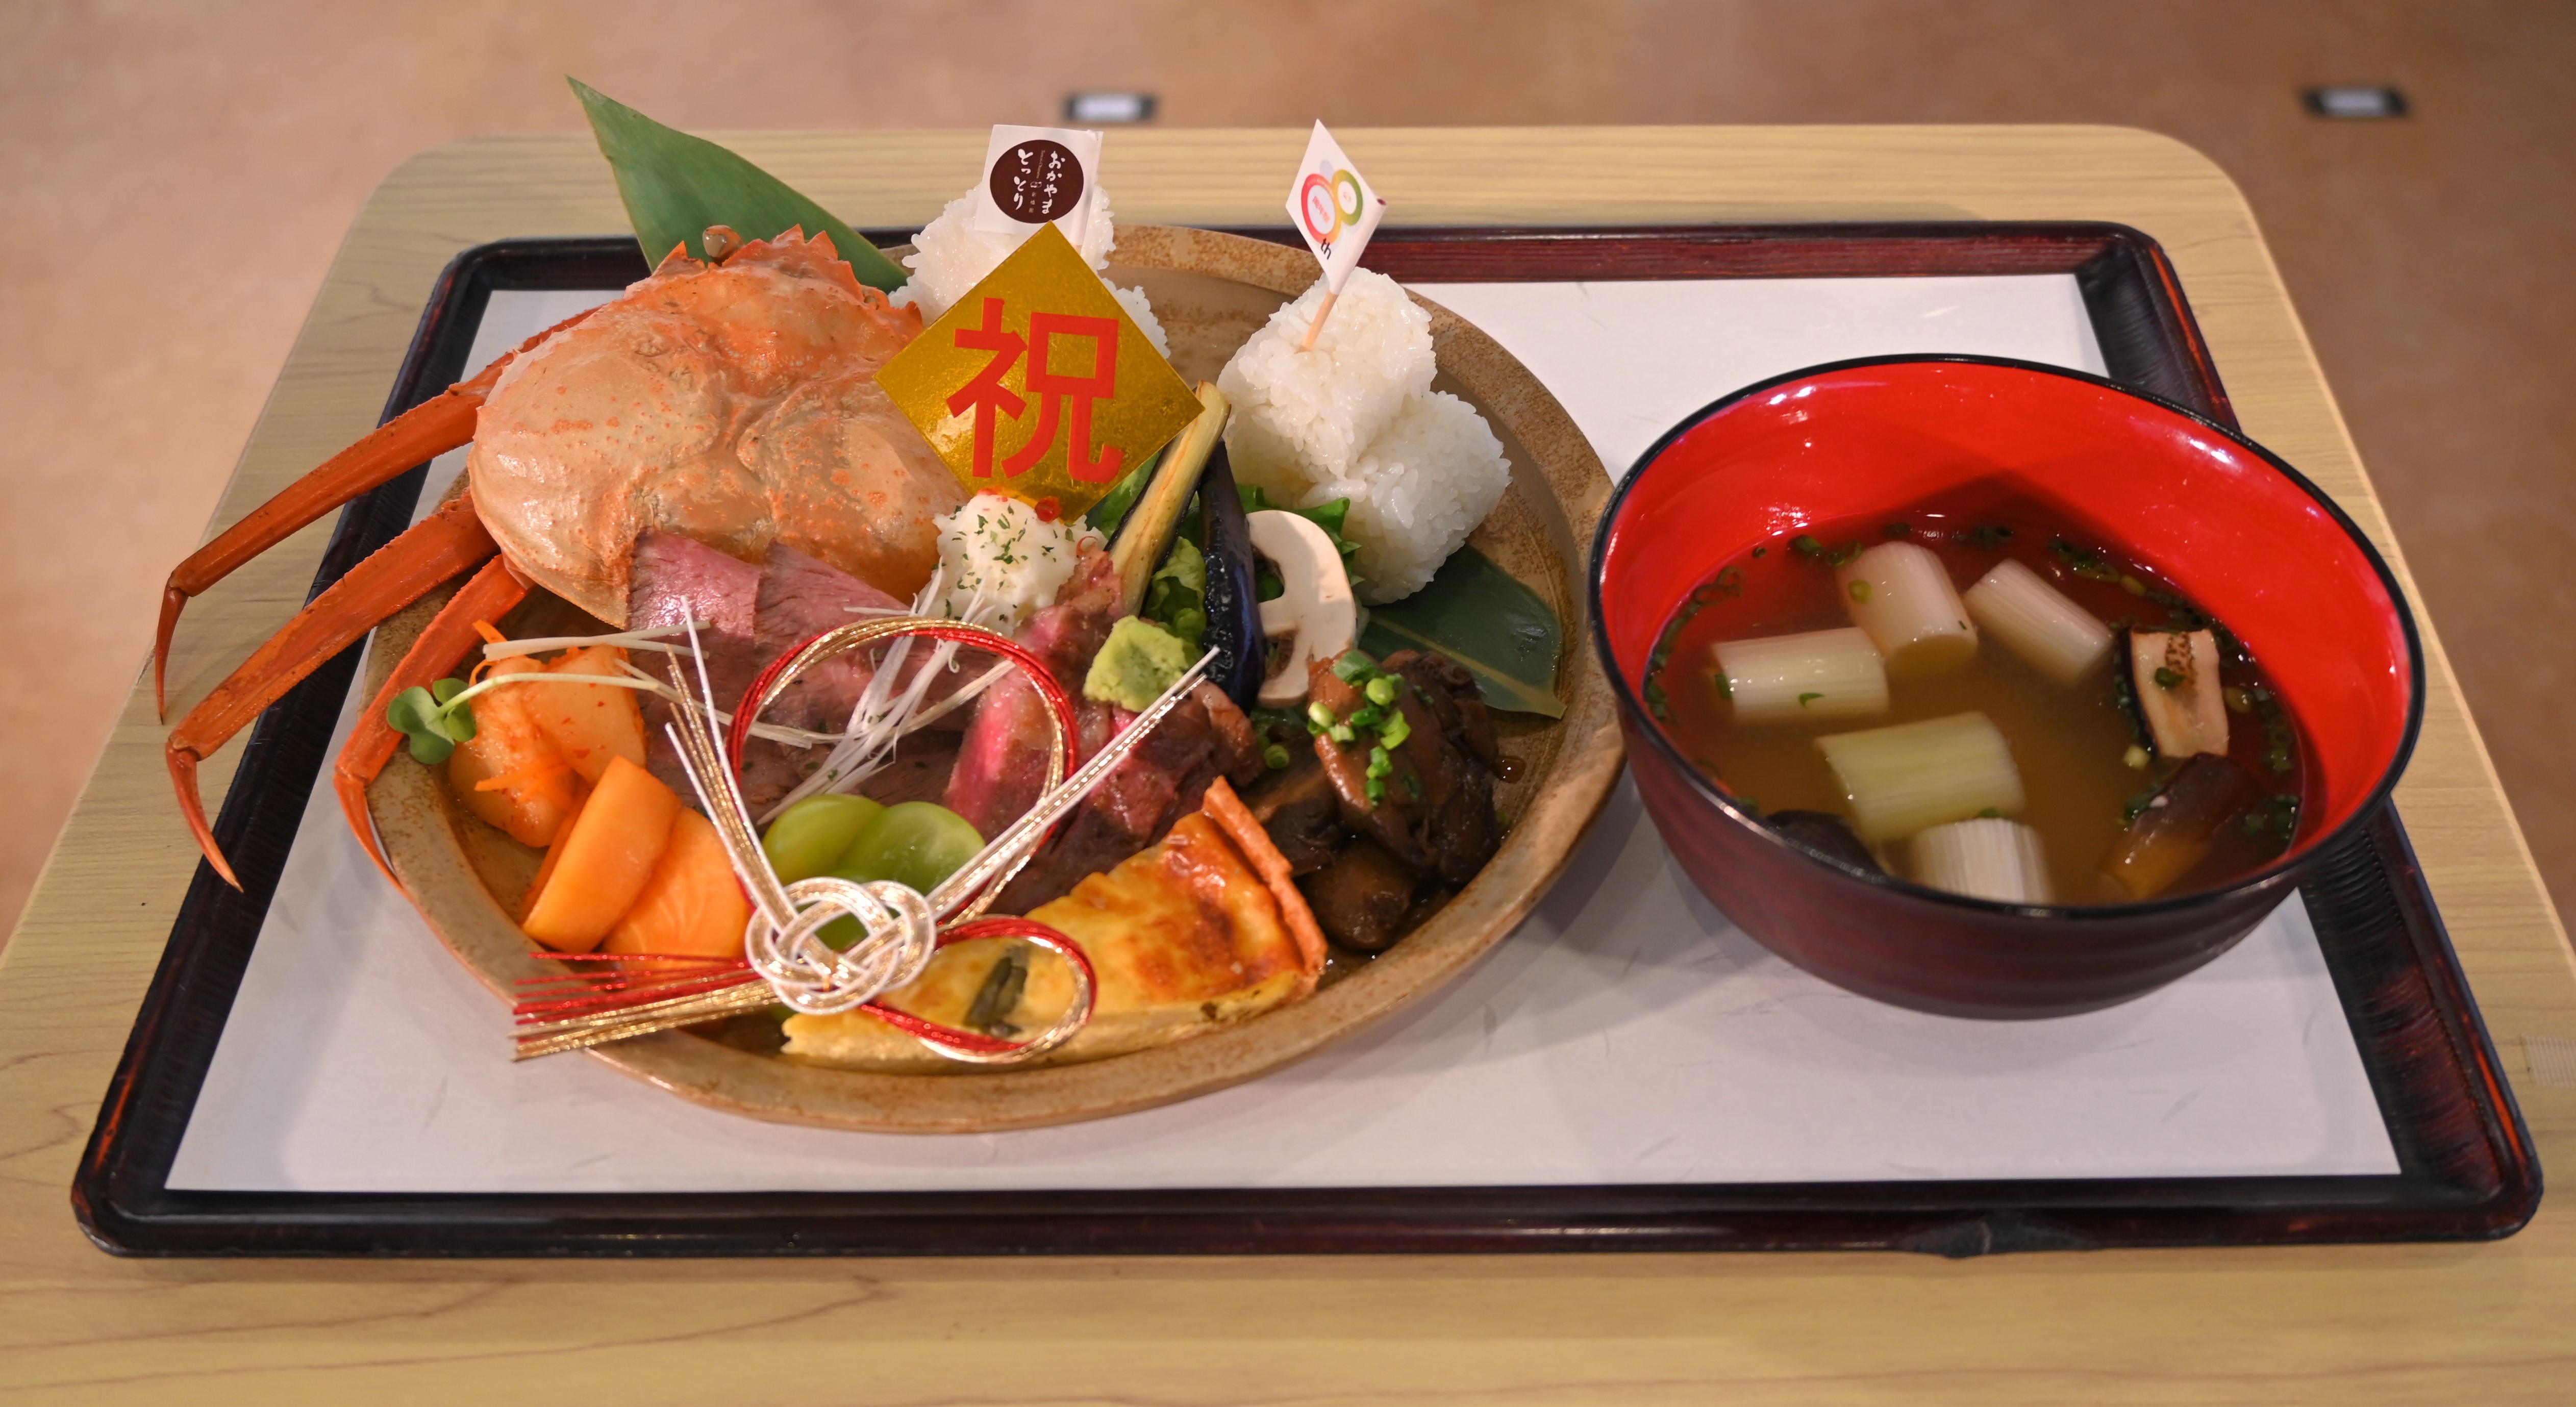 鳥取、岡山両県の食材で作った「祝膳」。